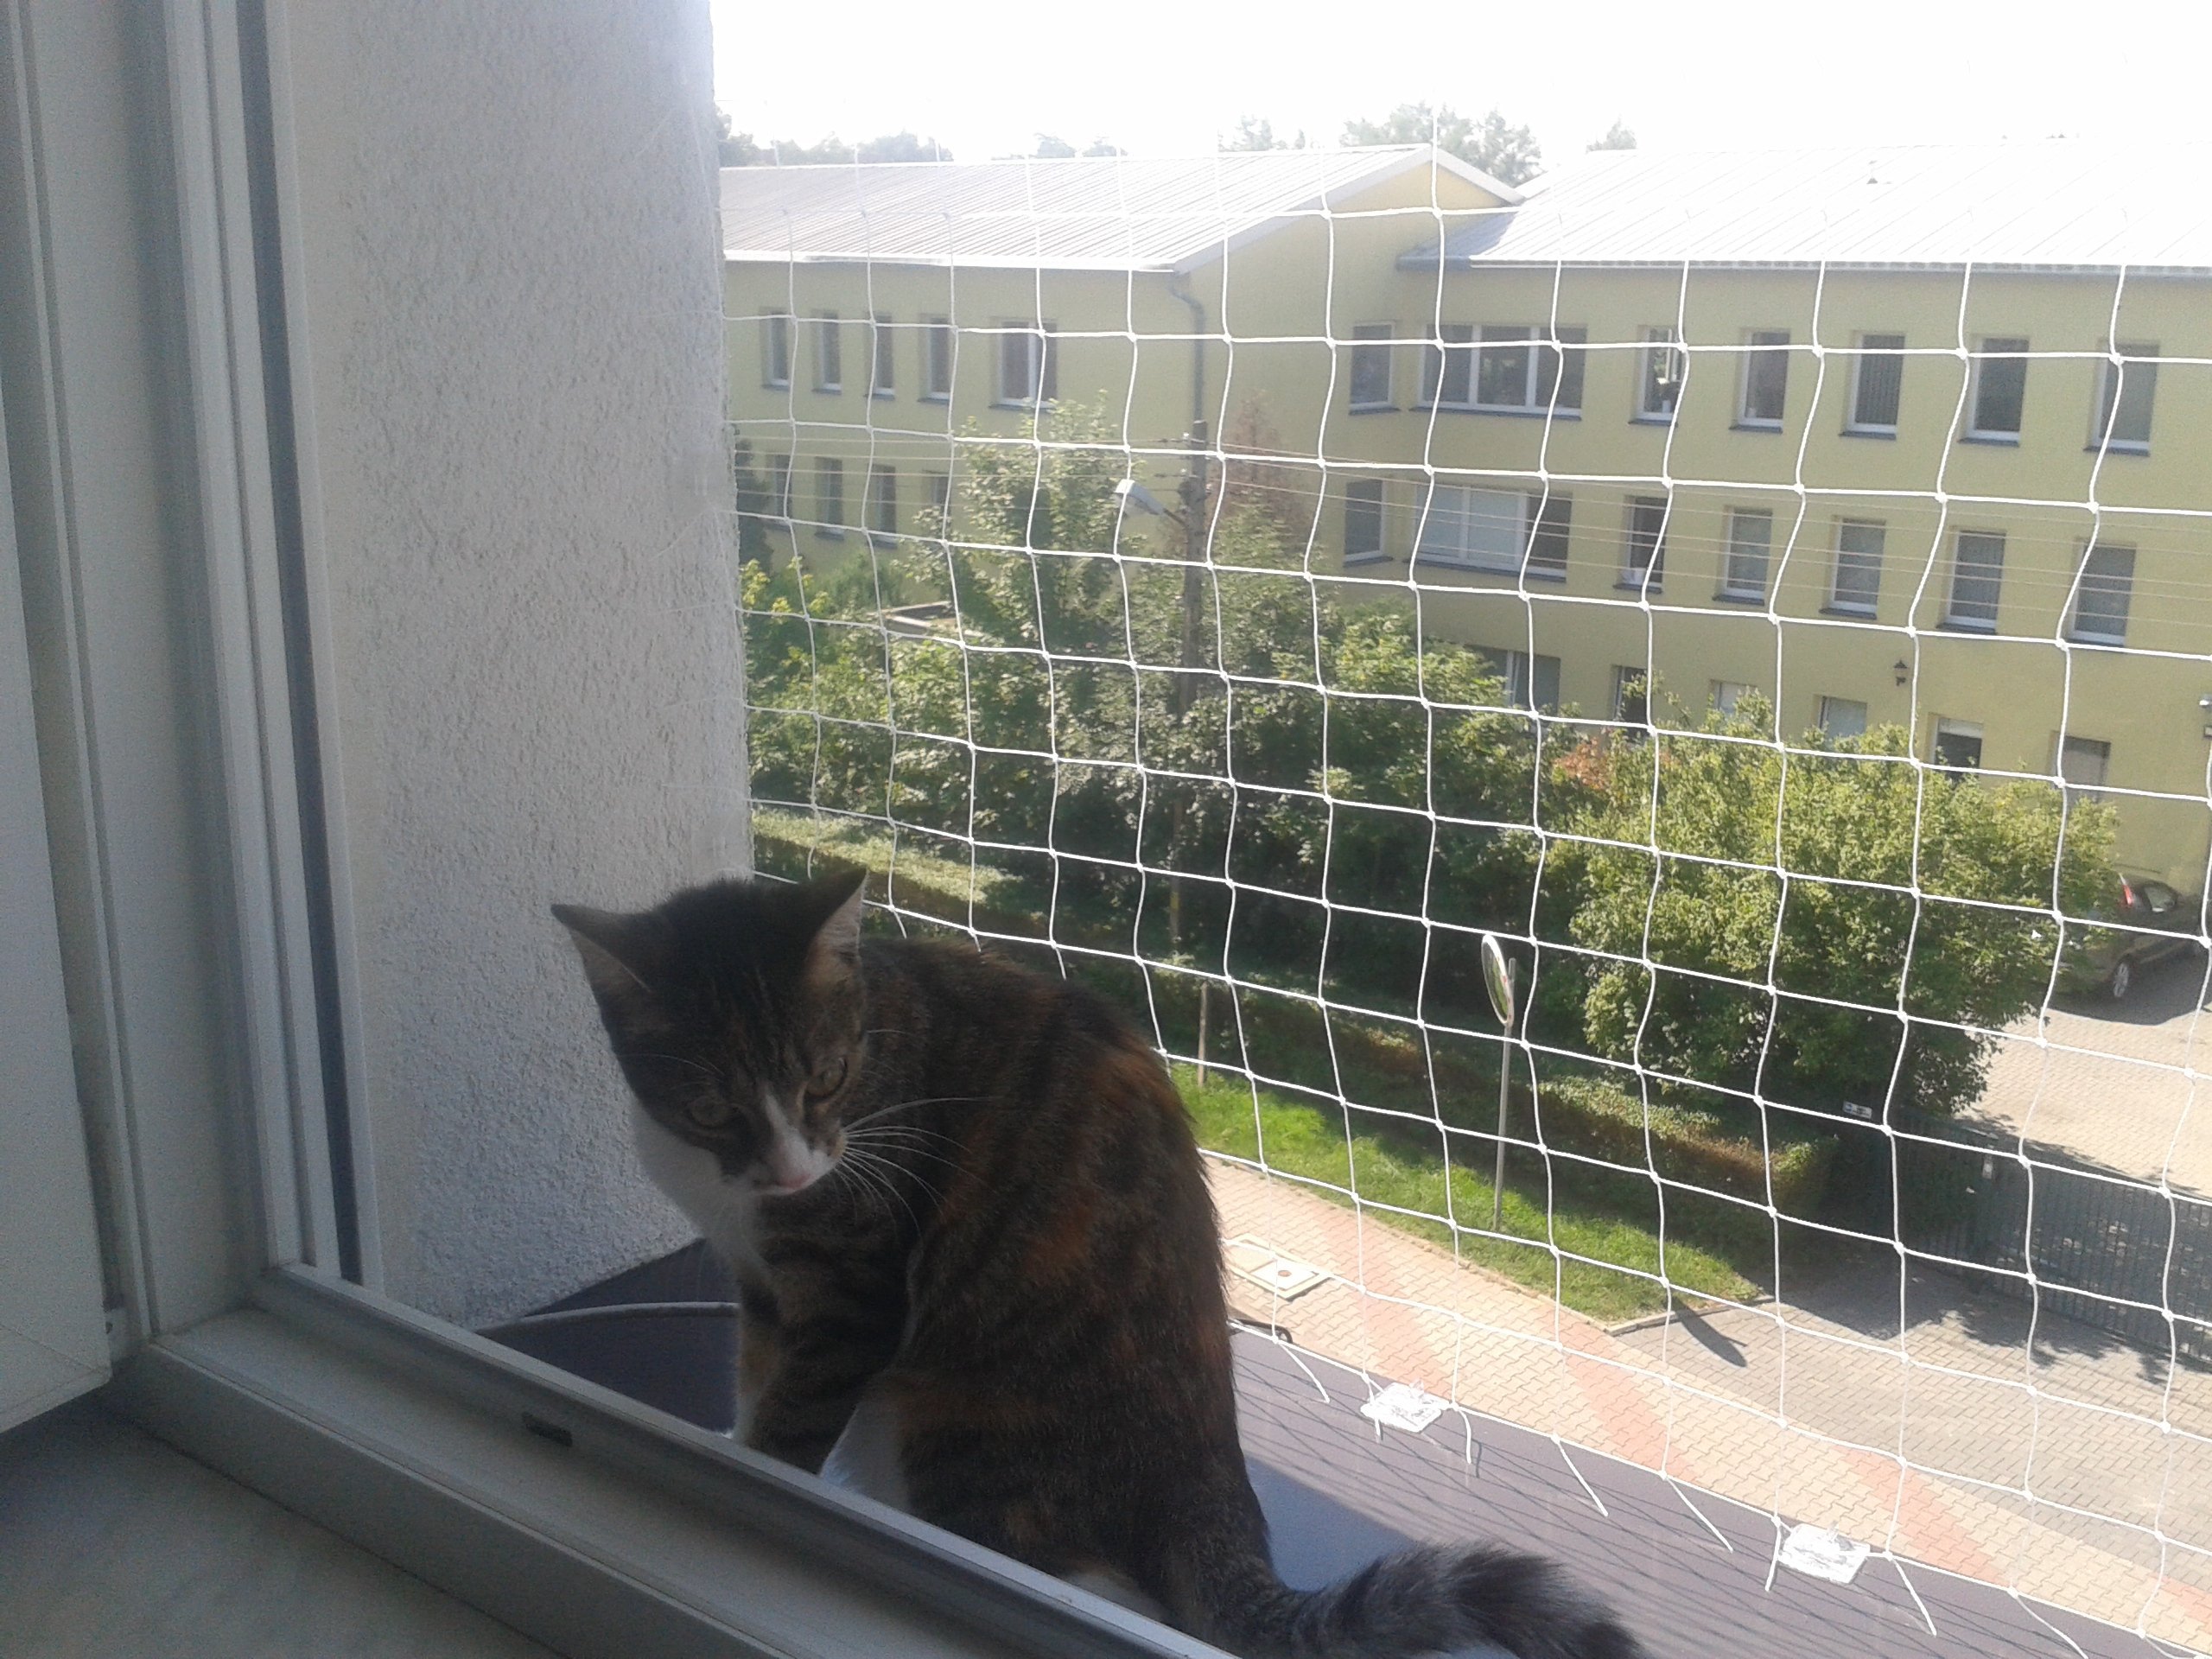 Балкон для кошек купить. Клетка антикошка. Вольер антикошка для балкона. Решетка антикошка. Сетка антикошка на балкон незастекленный.